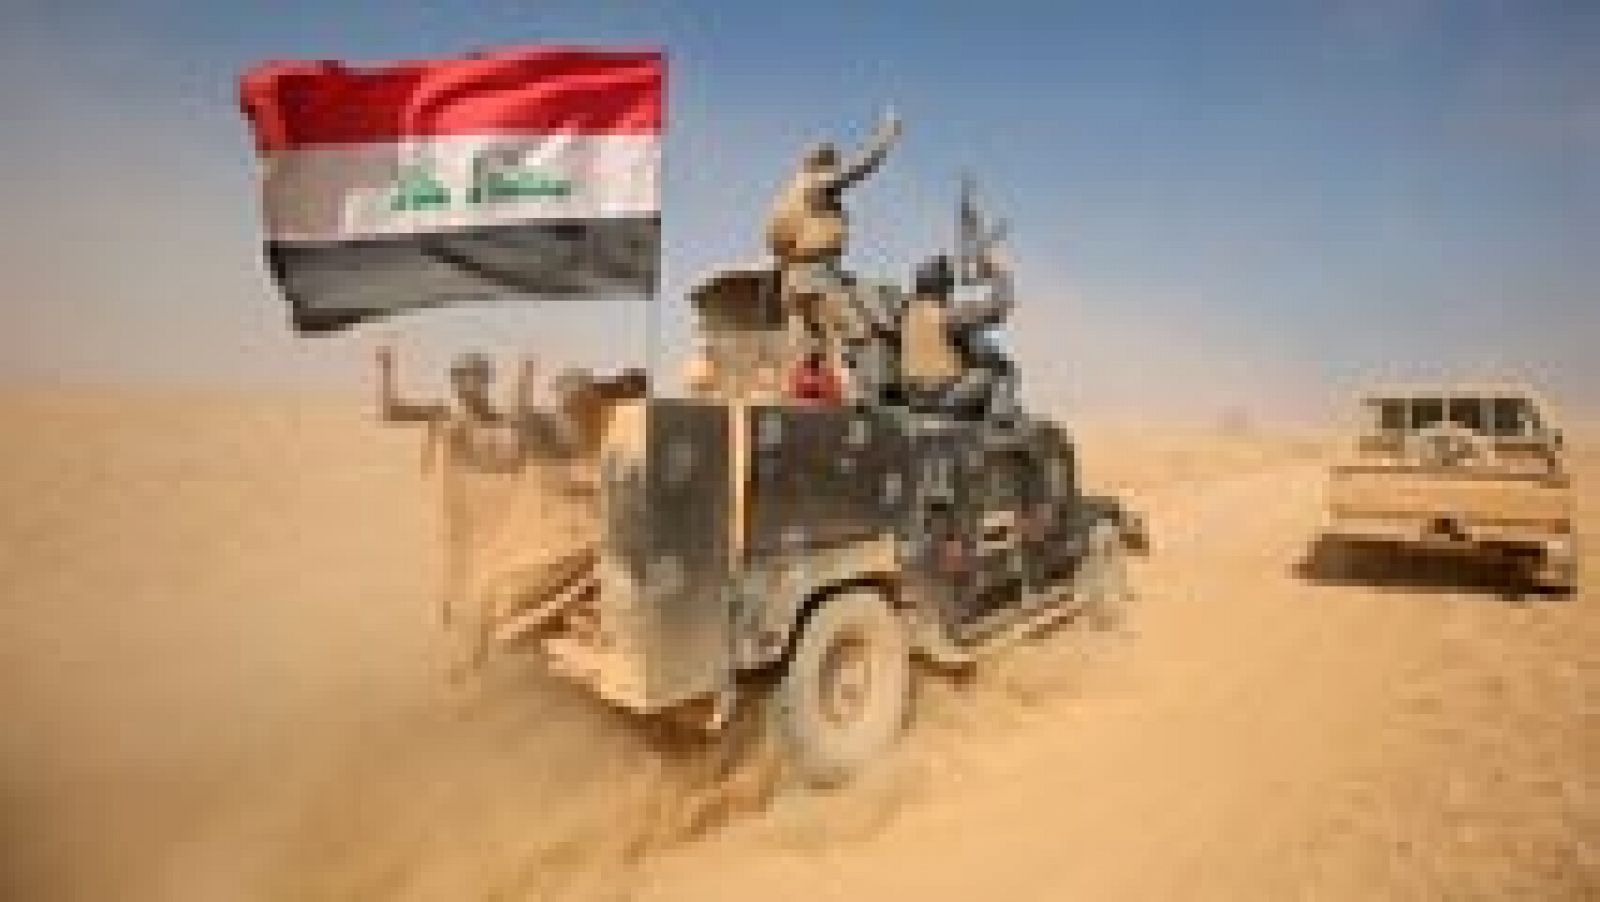 Las tropas kurdas e iraquíes ralentizan su avance en el tercer día de ofensiva para recuperar Mosul